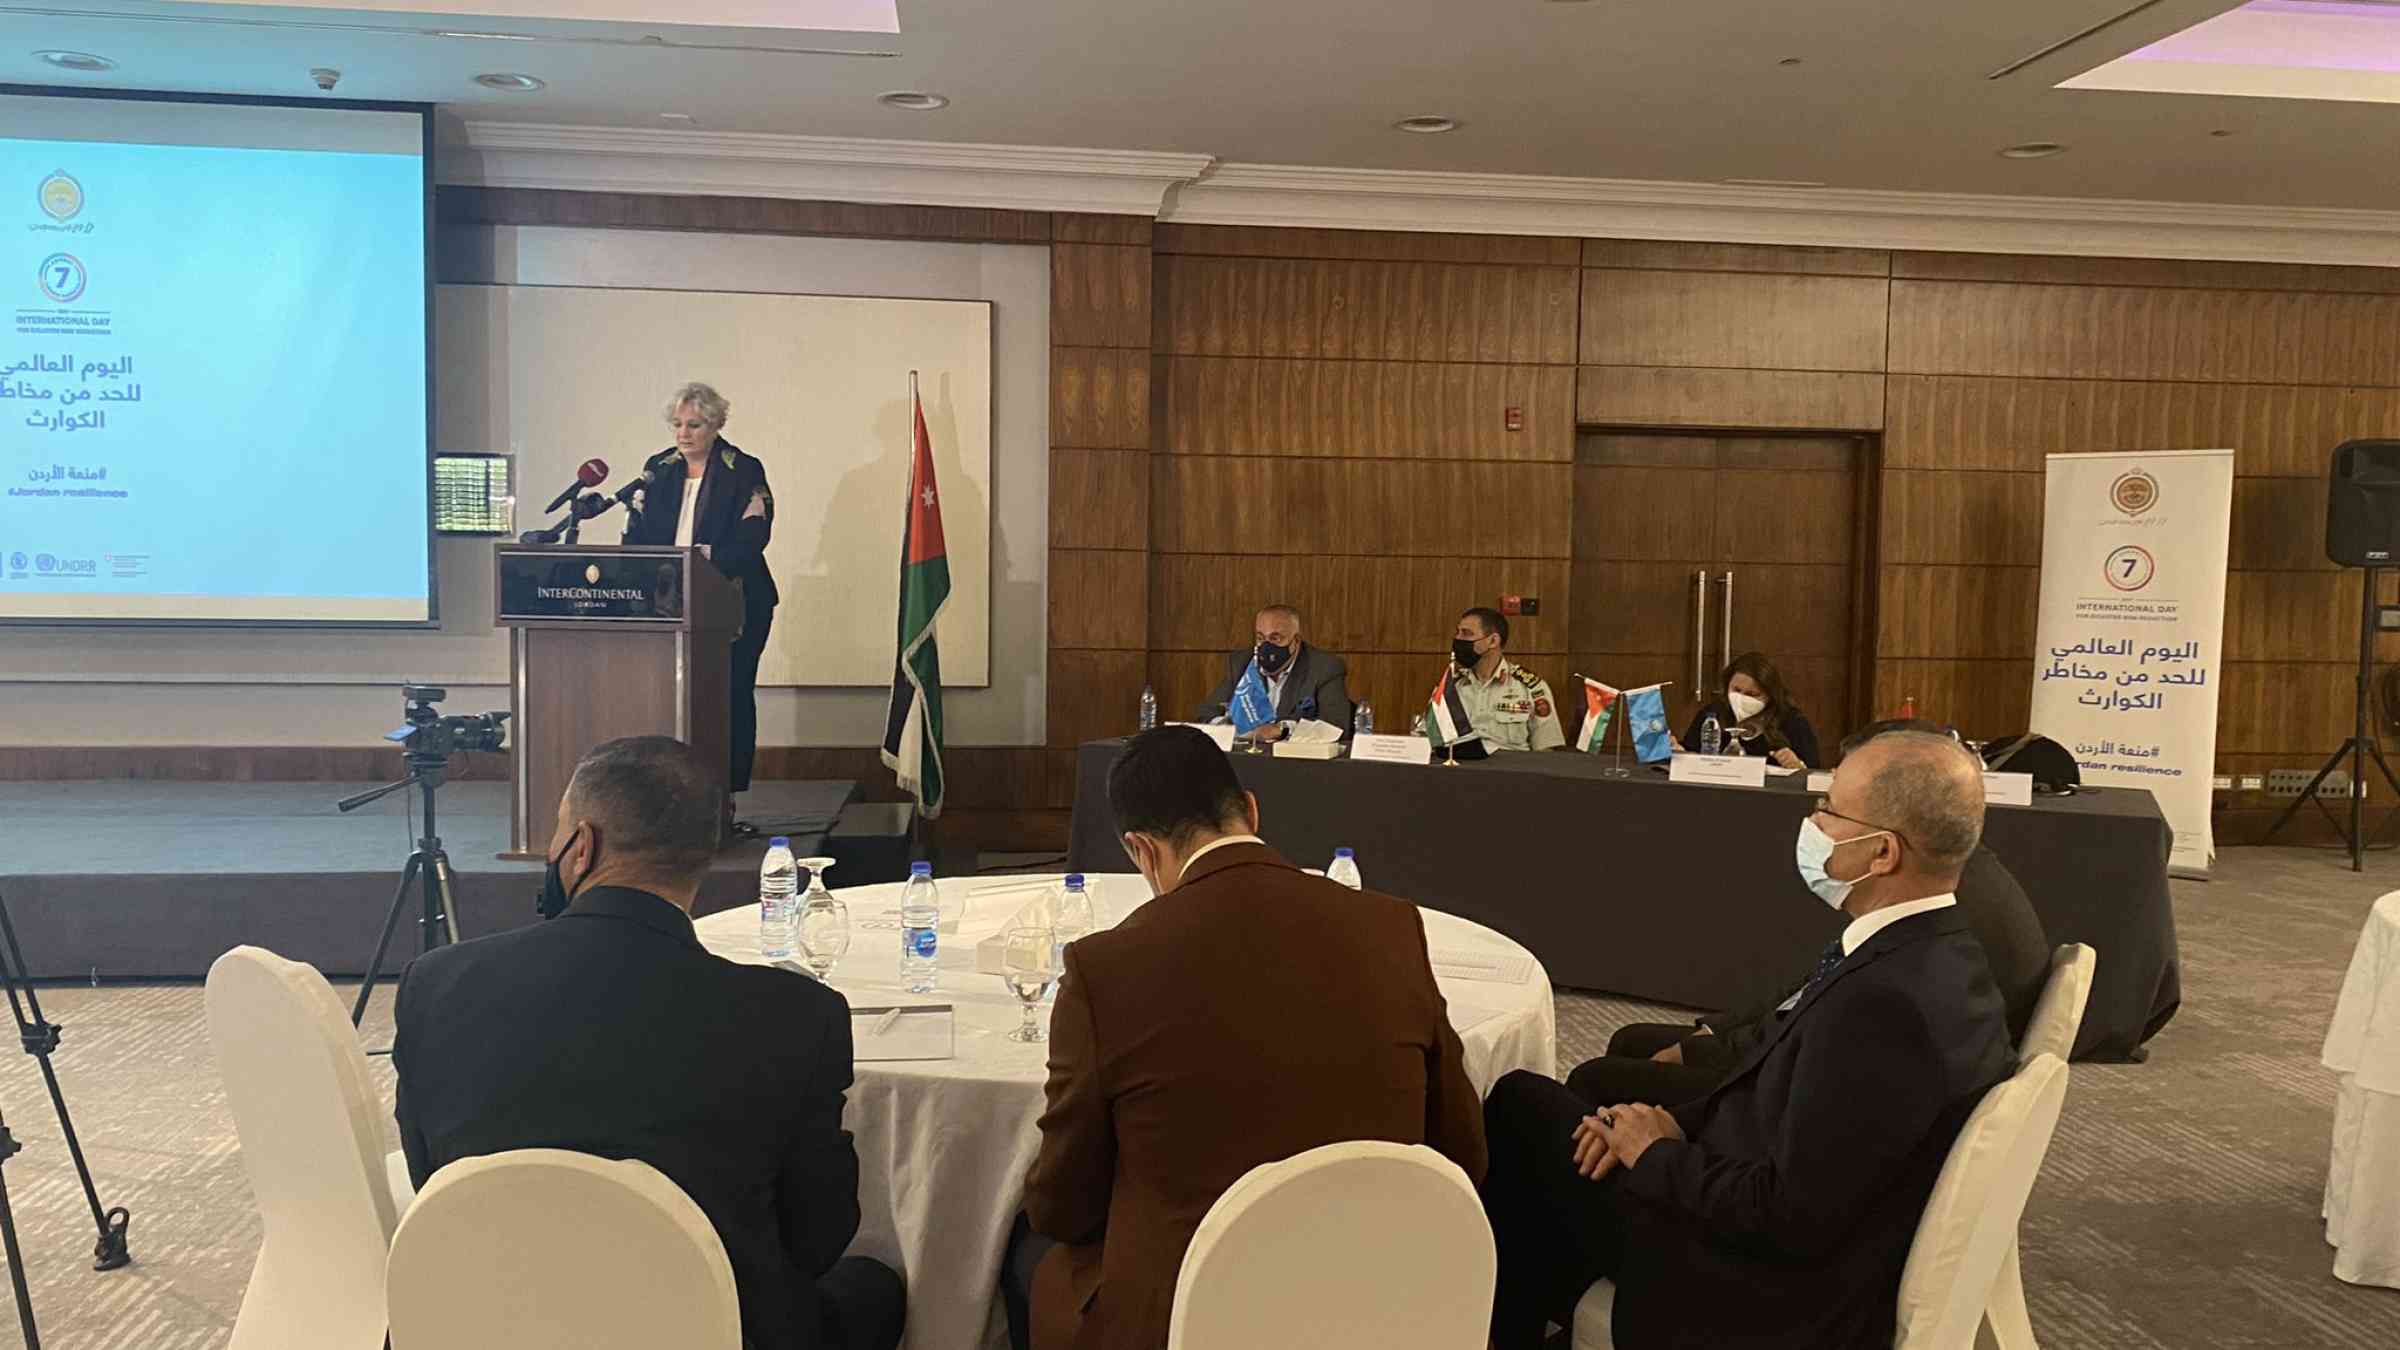 International Day for Disaster Risk Reduction in Jordan